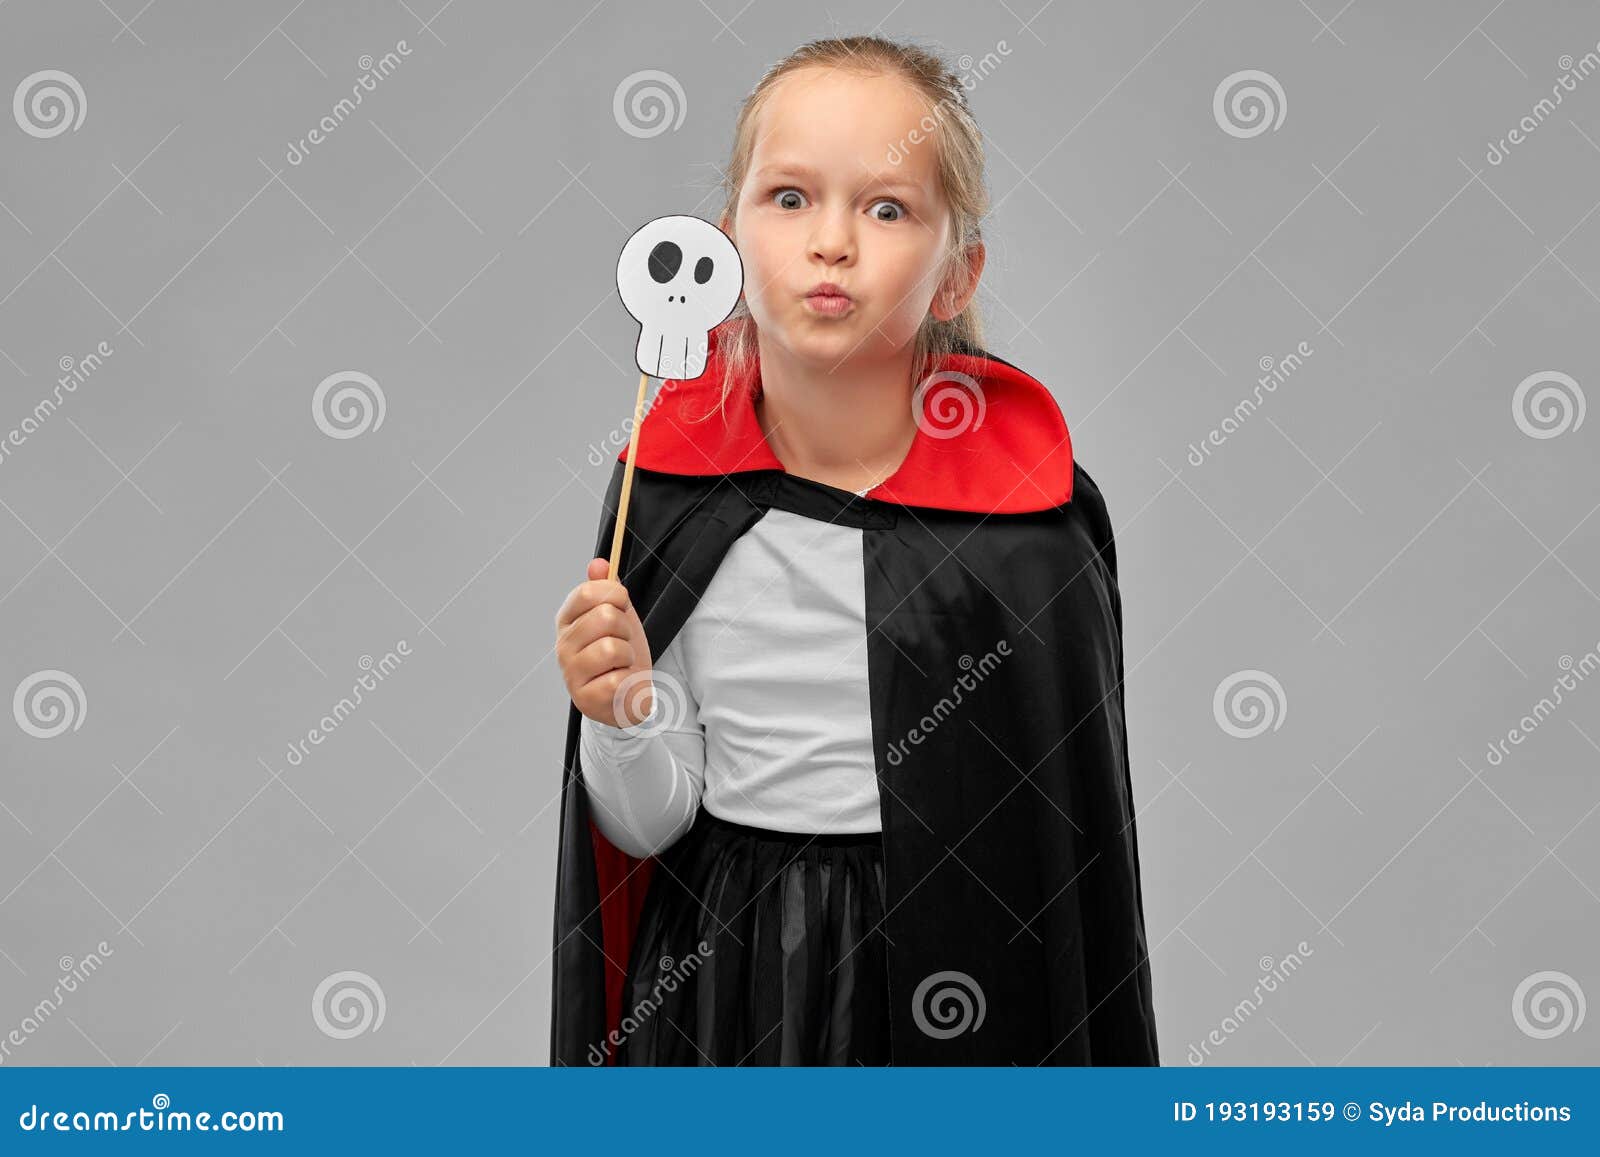 Todos Docenas Son Chica Disfrazada De Dracula Con Capa En Halloween Imagen de archivo -  Imagen de ropas, espeluznante: 193193159